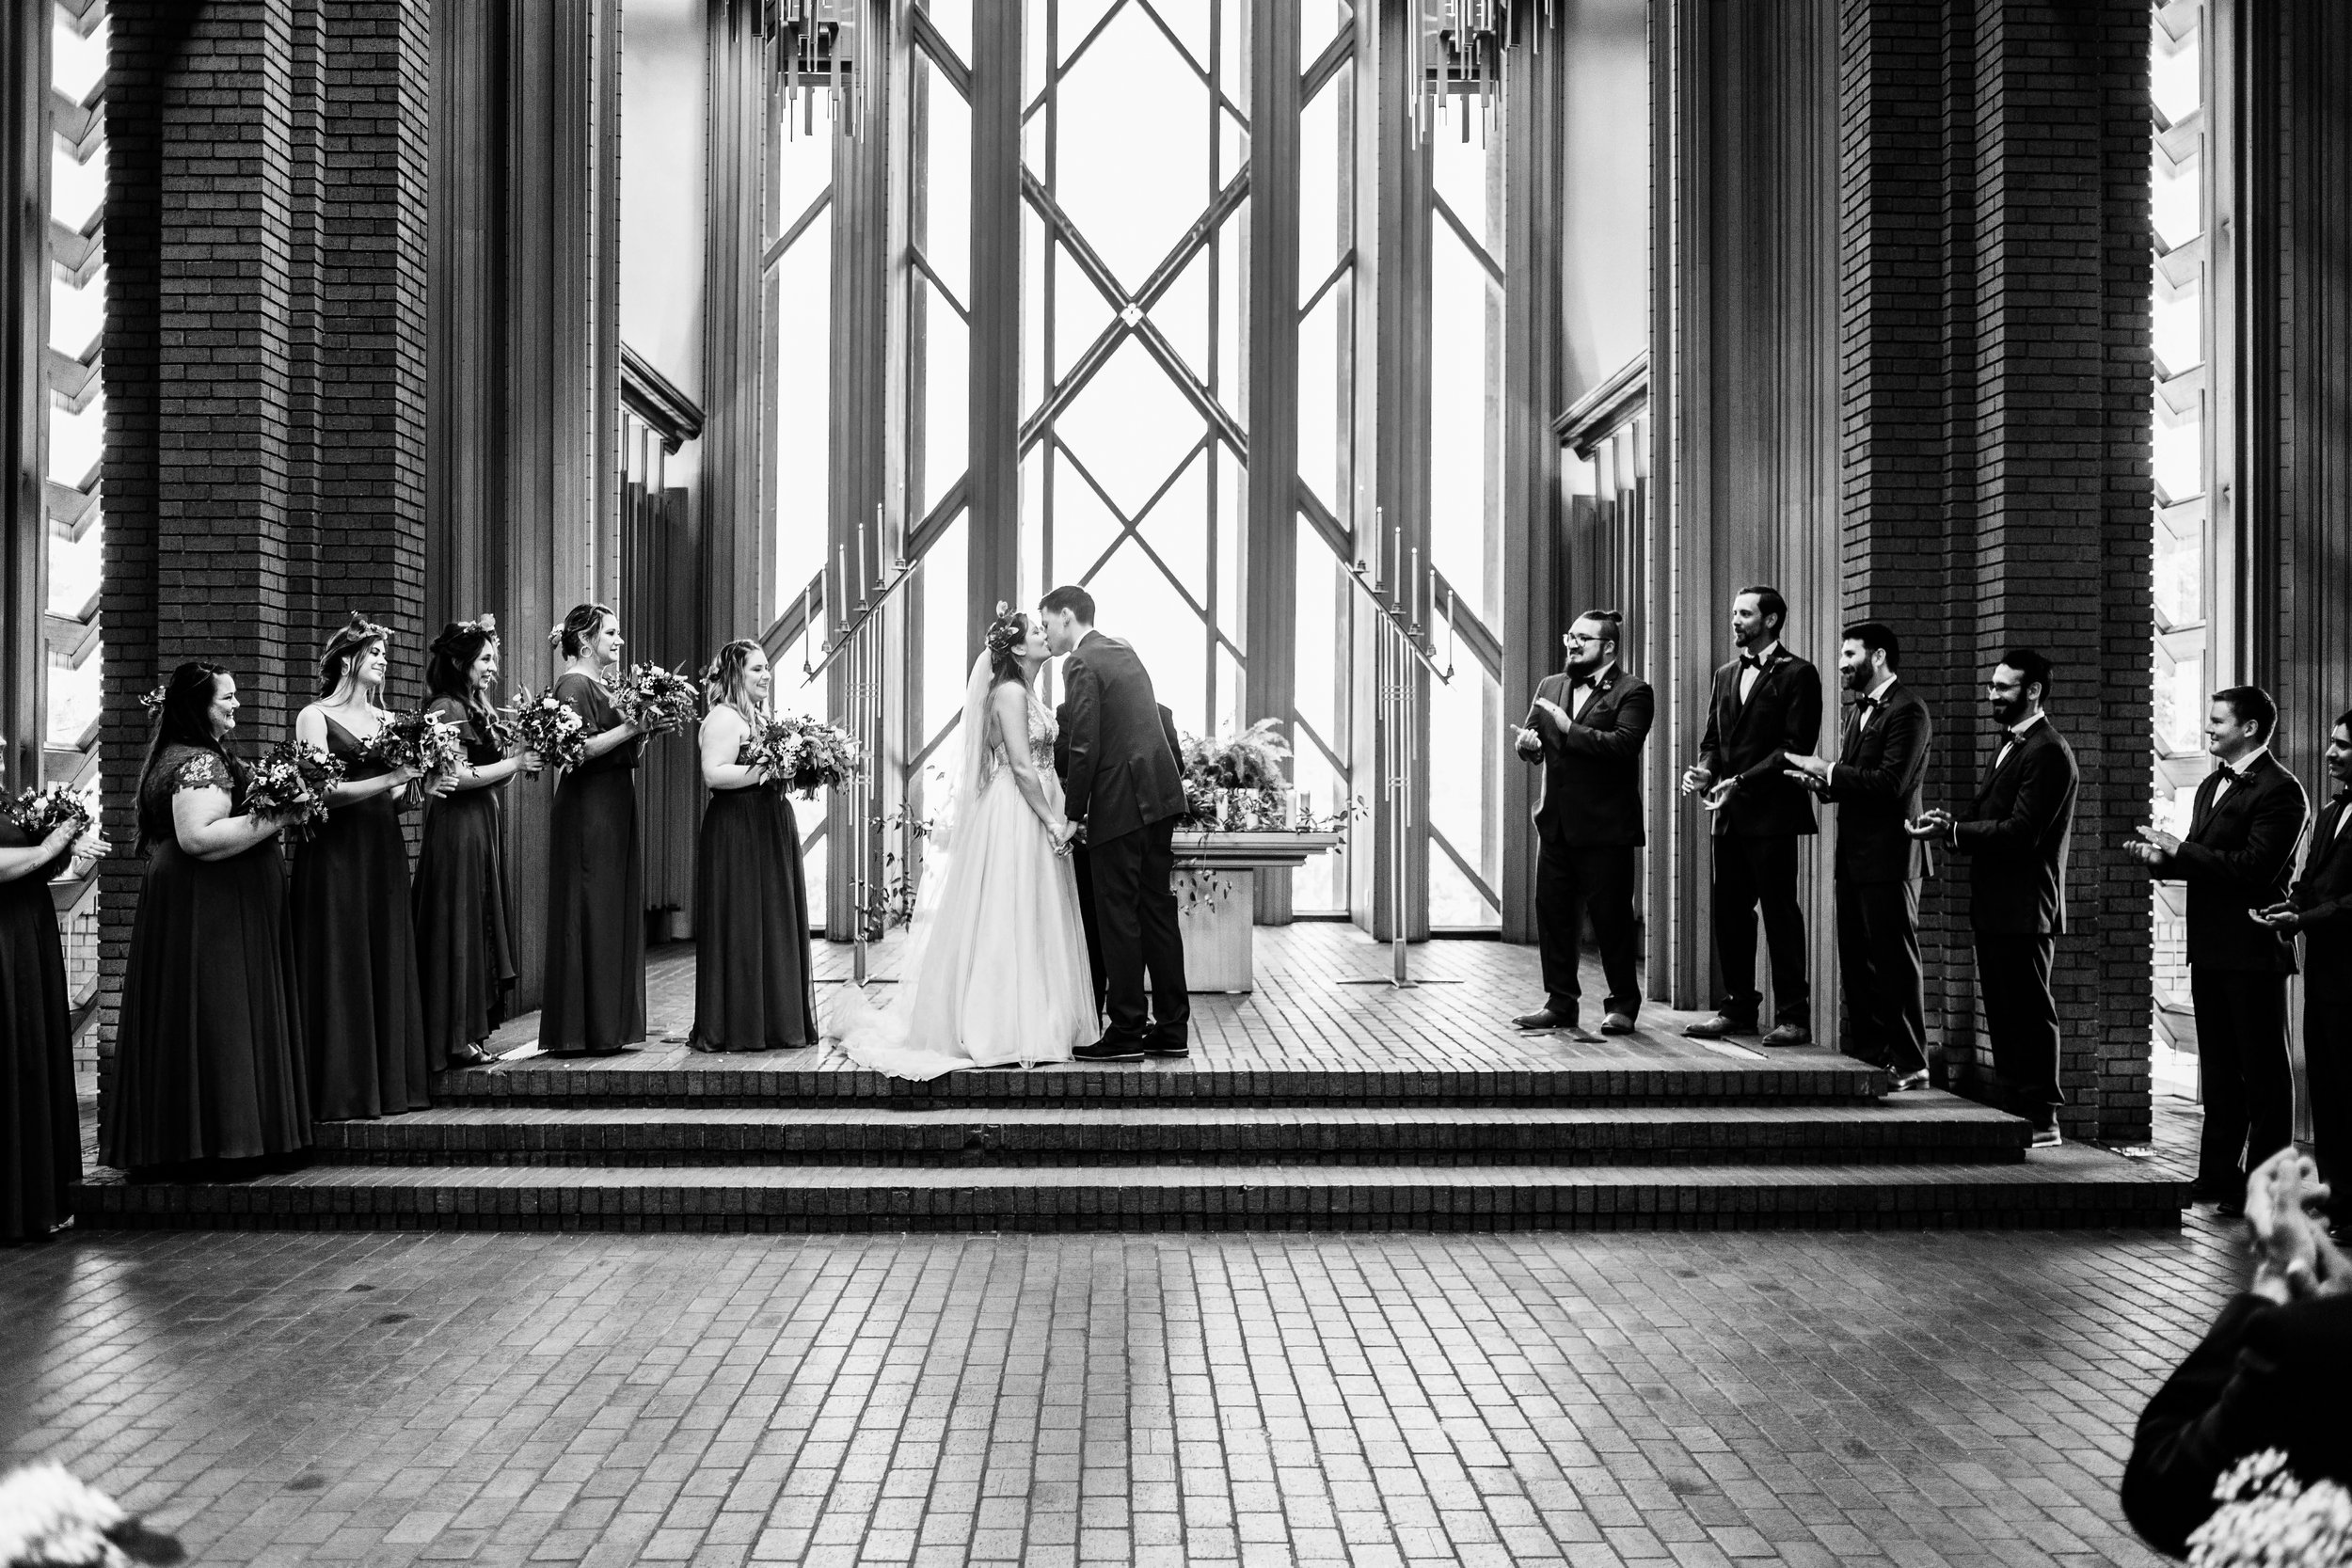 Kelsey & Tony Wedding Day Images (368).jpg